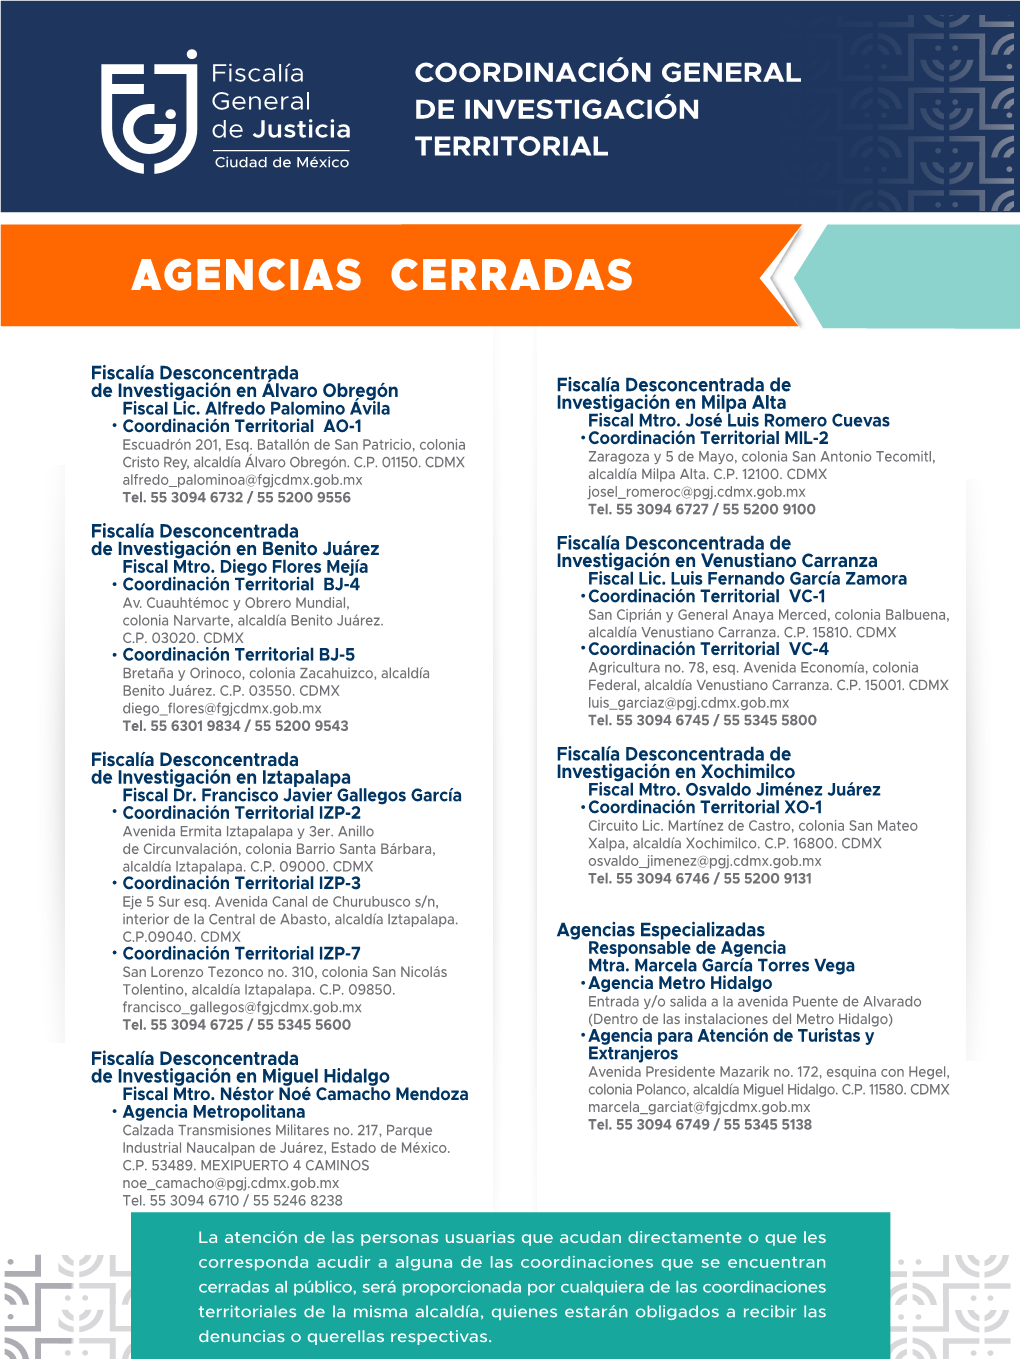 AGENCIAS CERRADAS TODAS 1.20 X 90